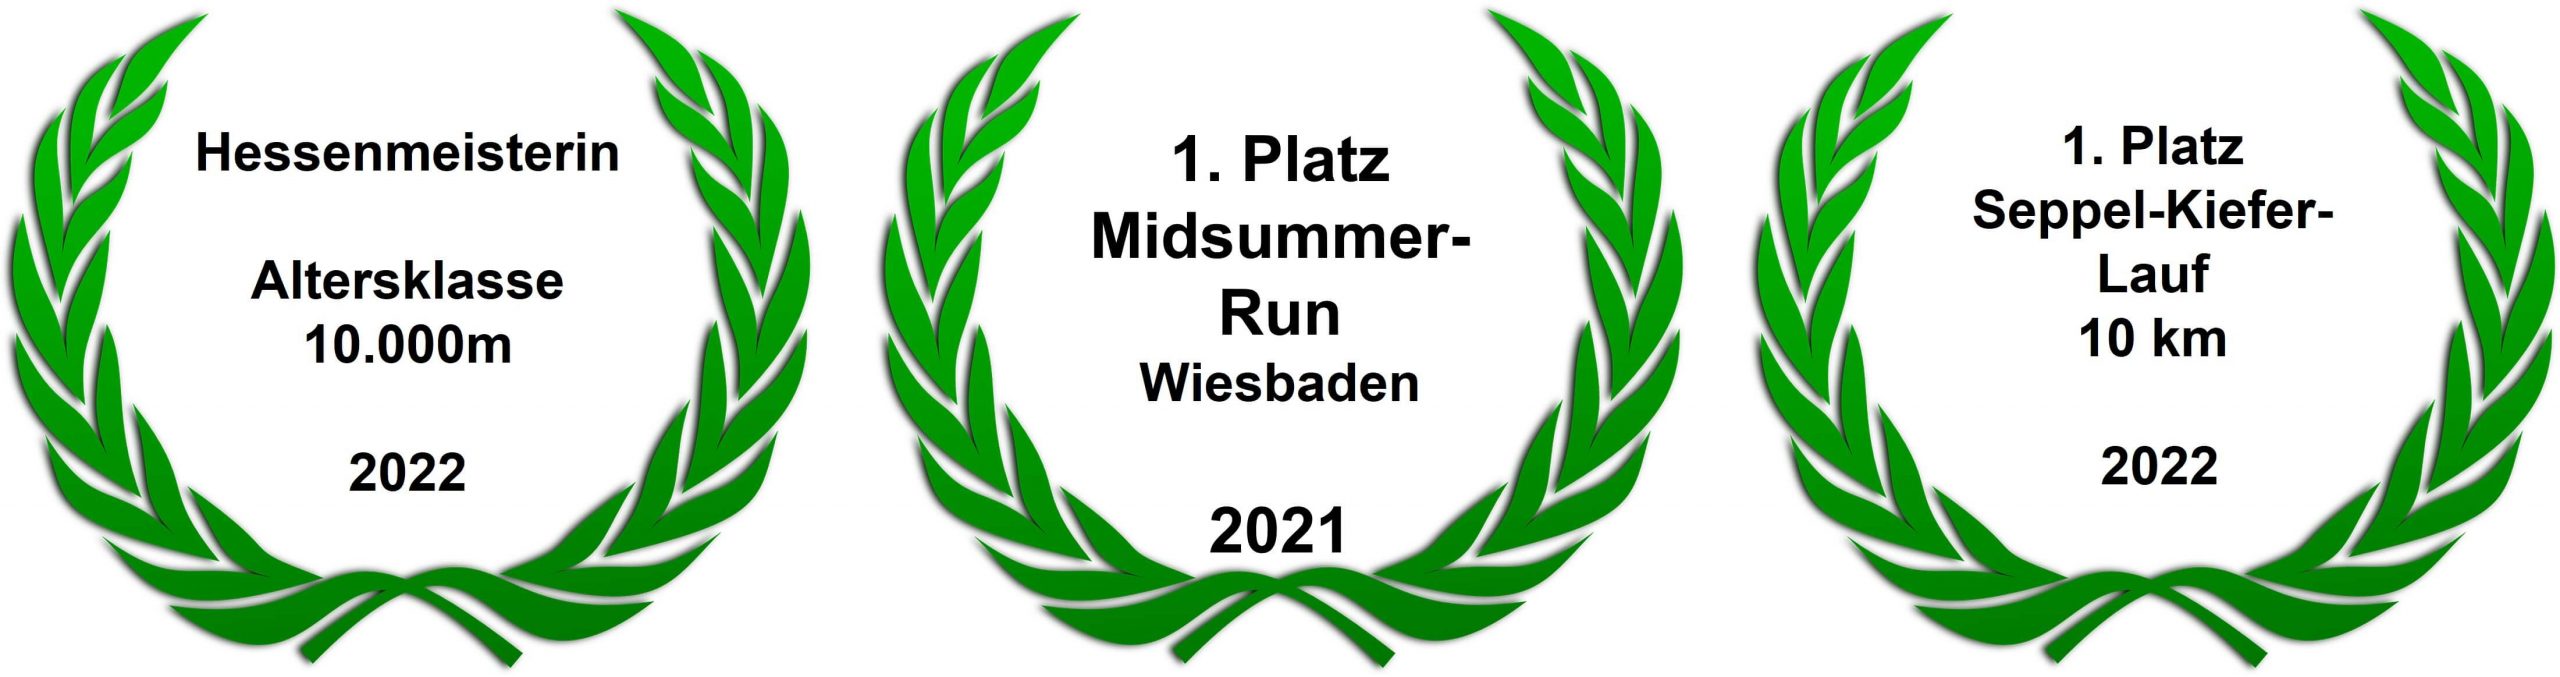 Running Wiesbaden und Mainz